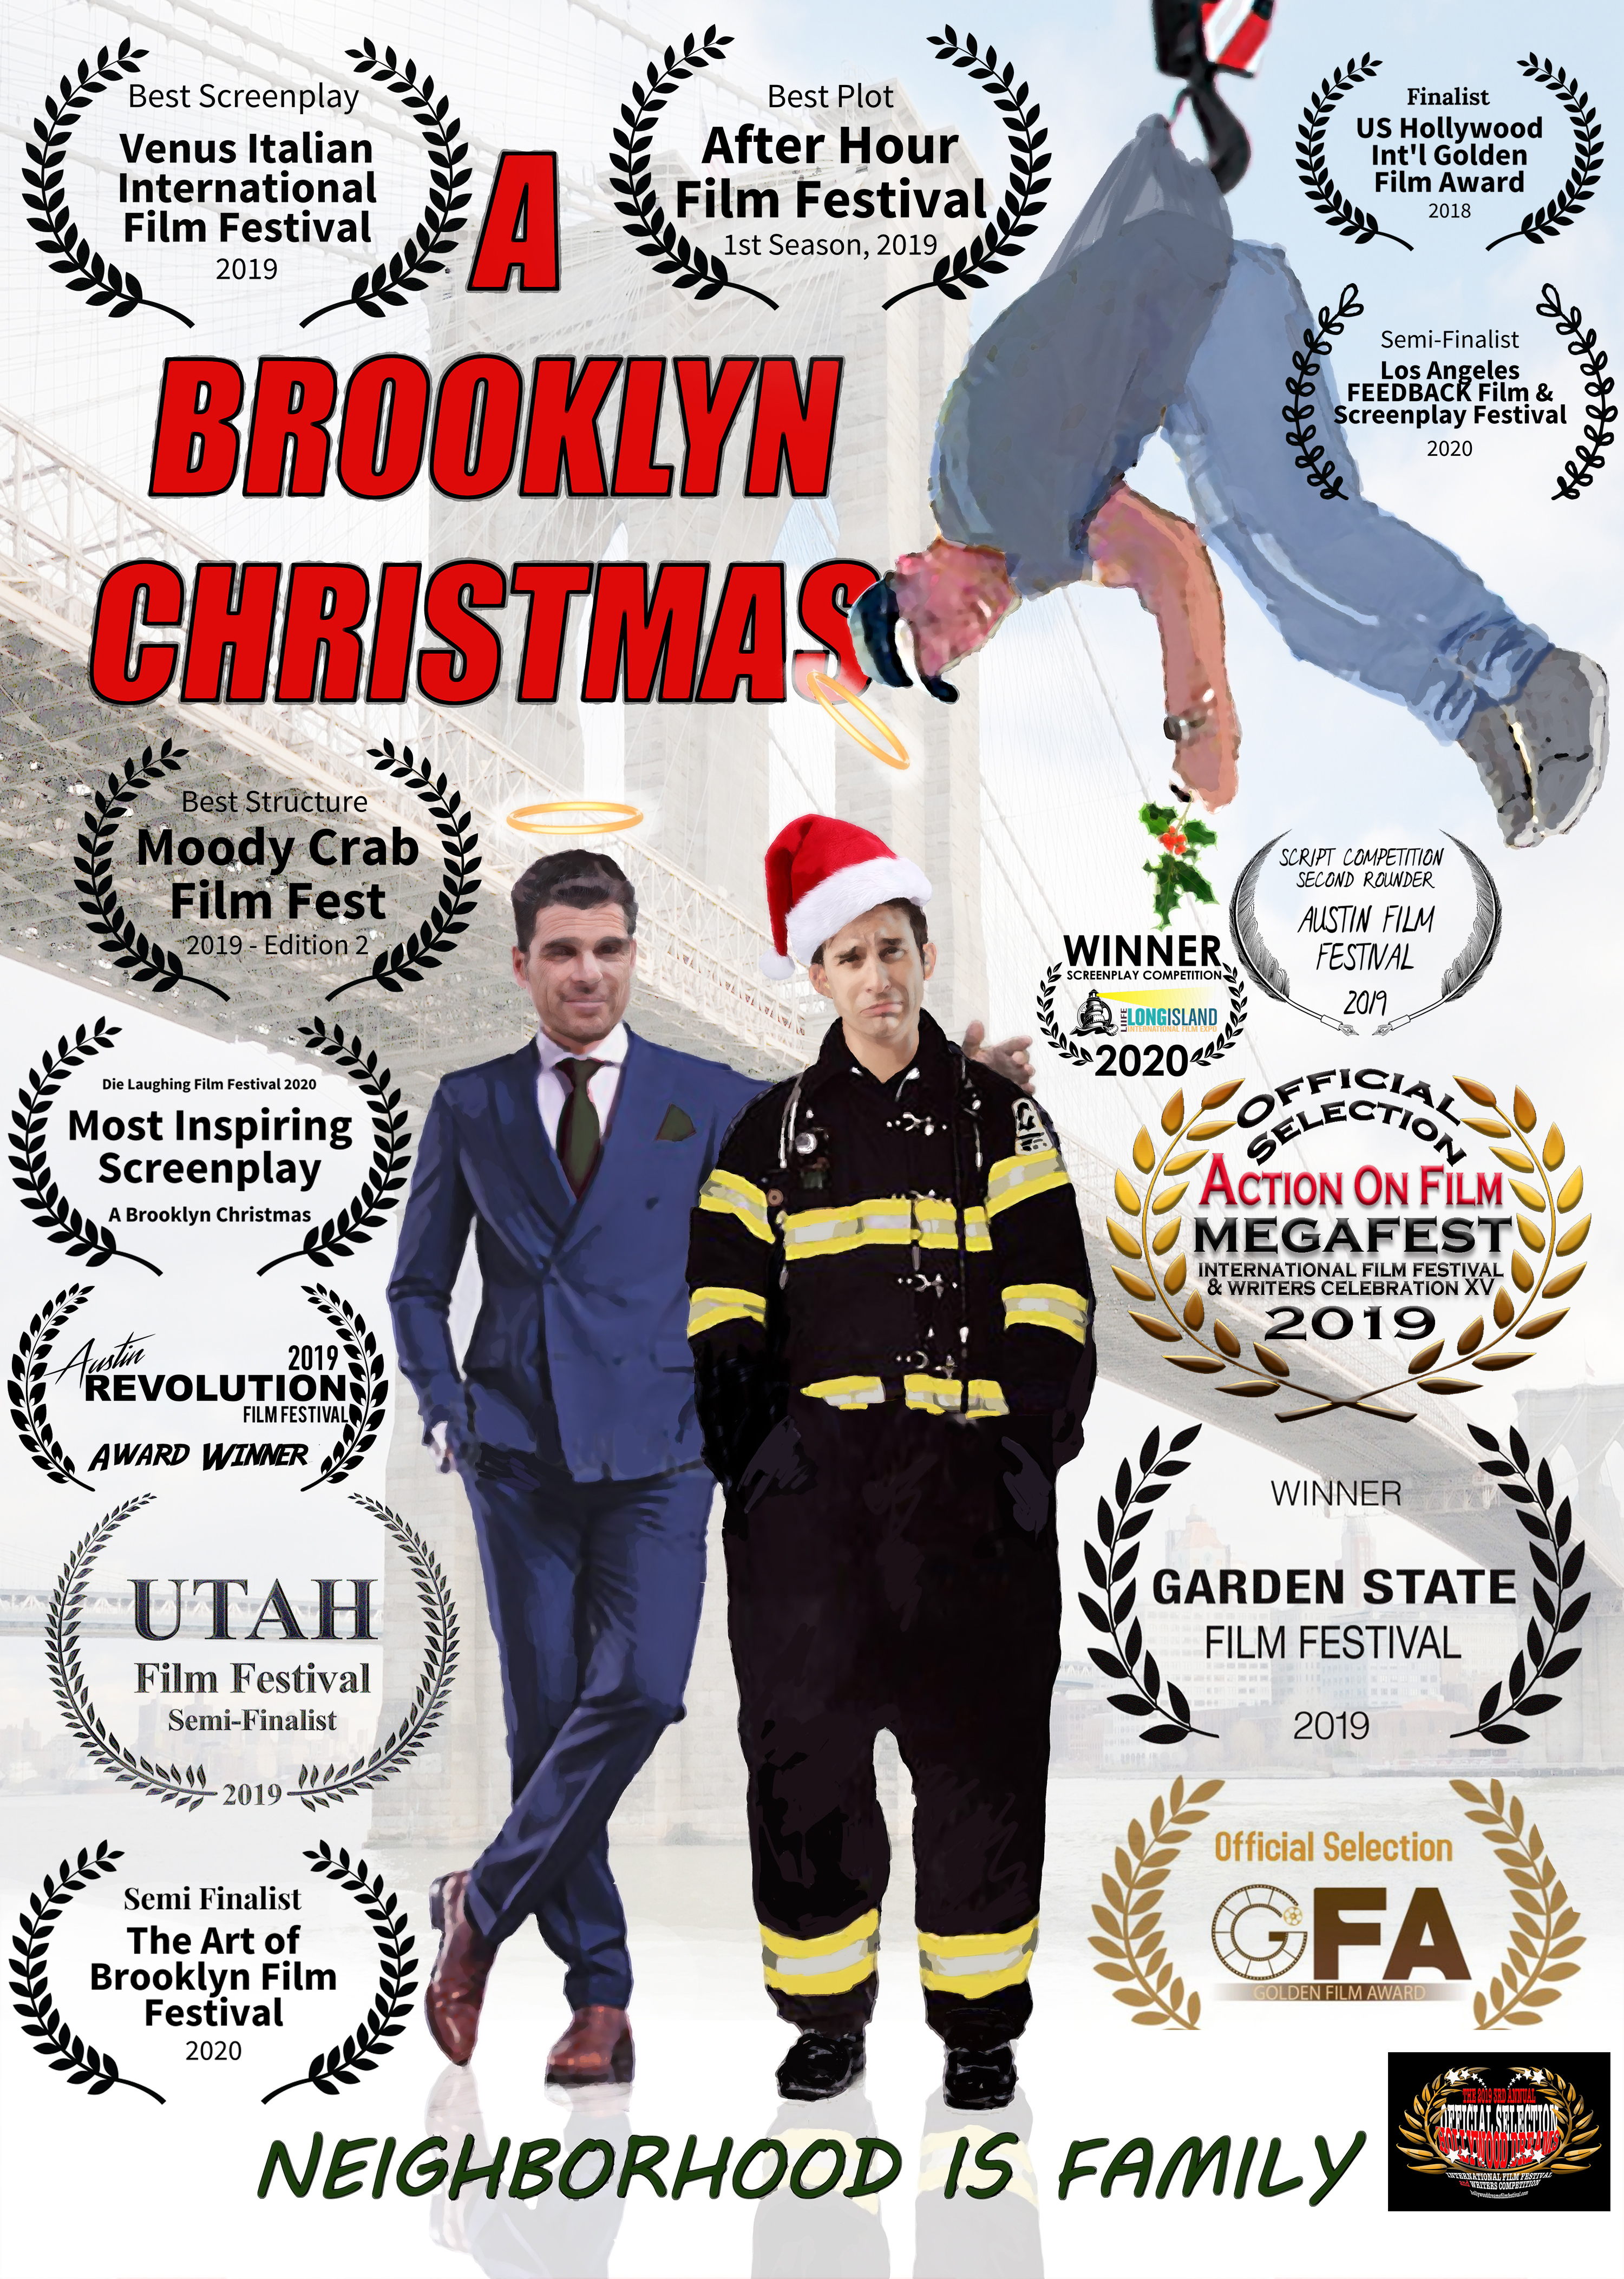 A Brooklyn Christmas